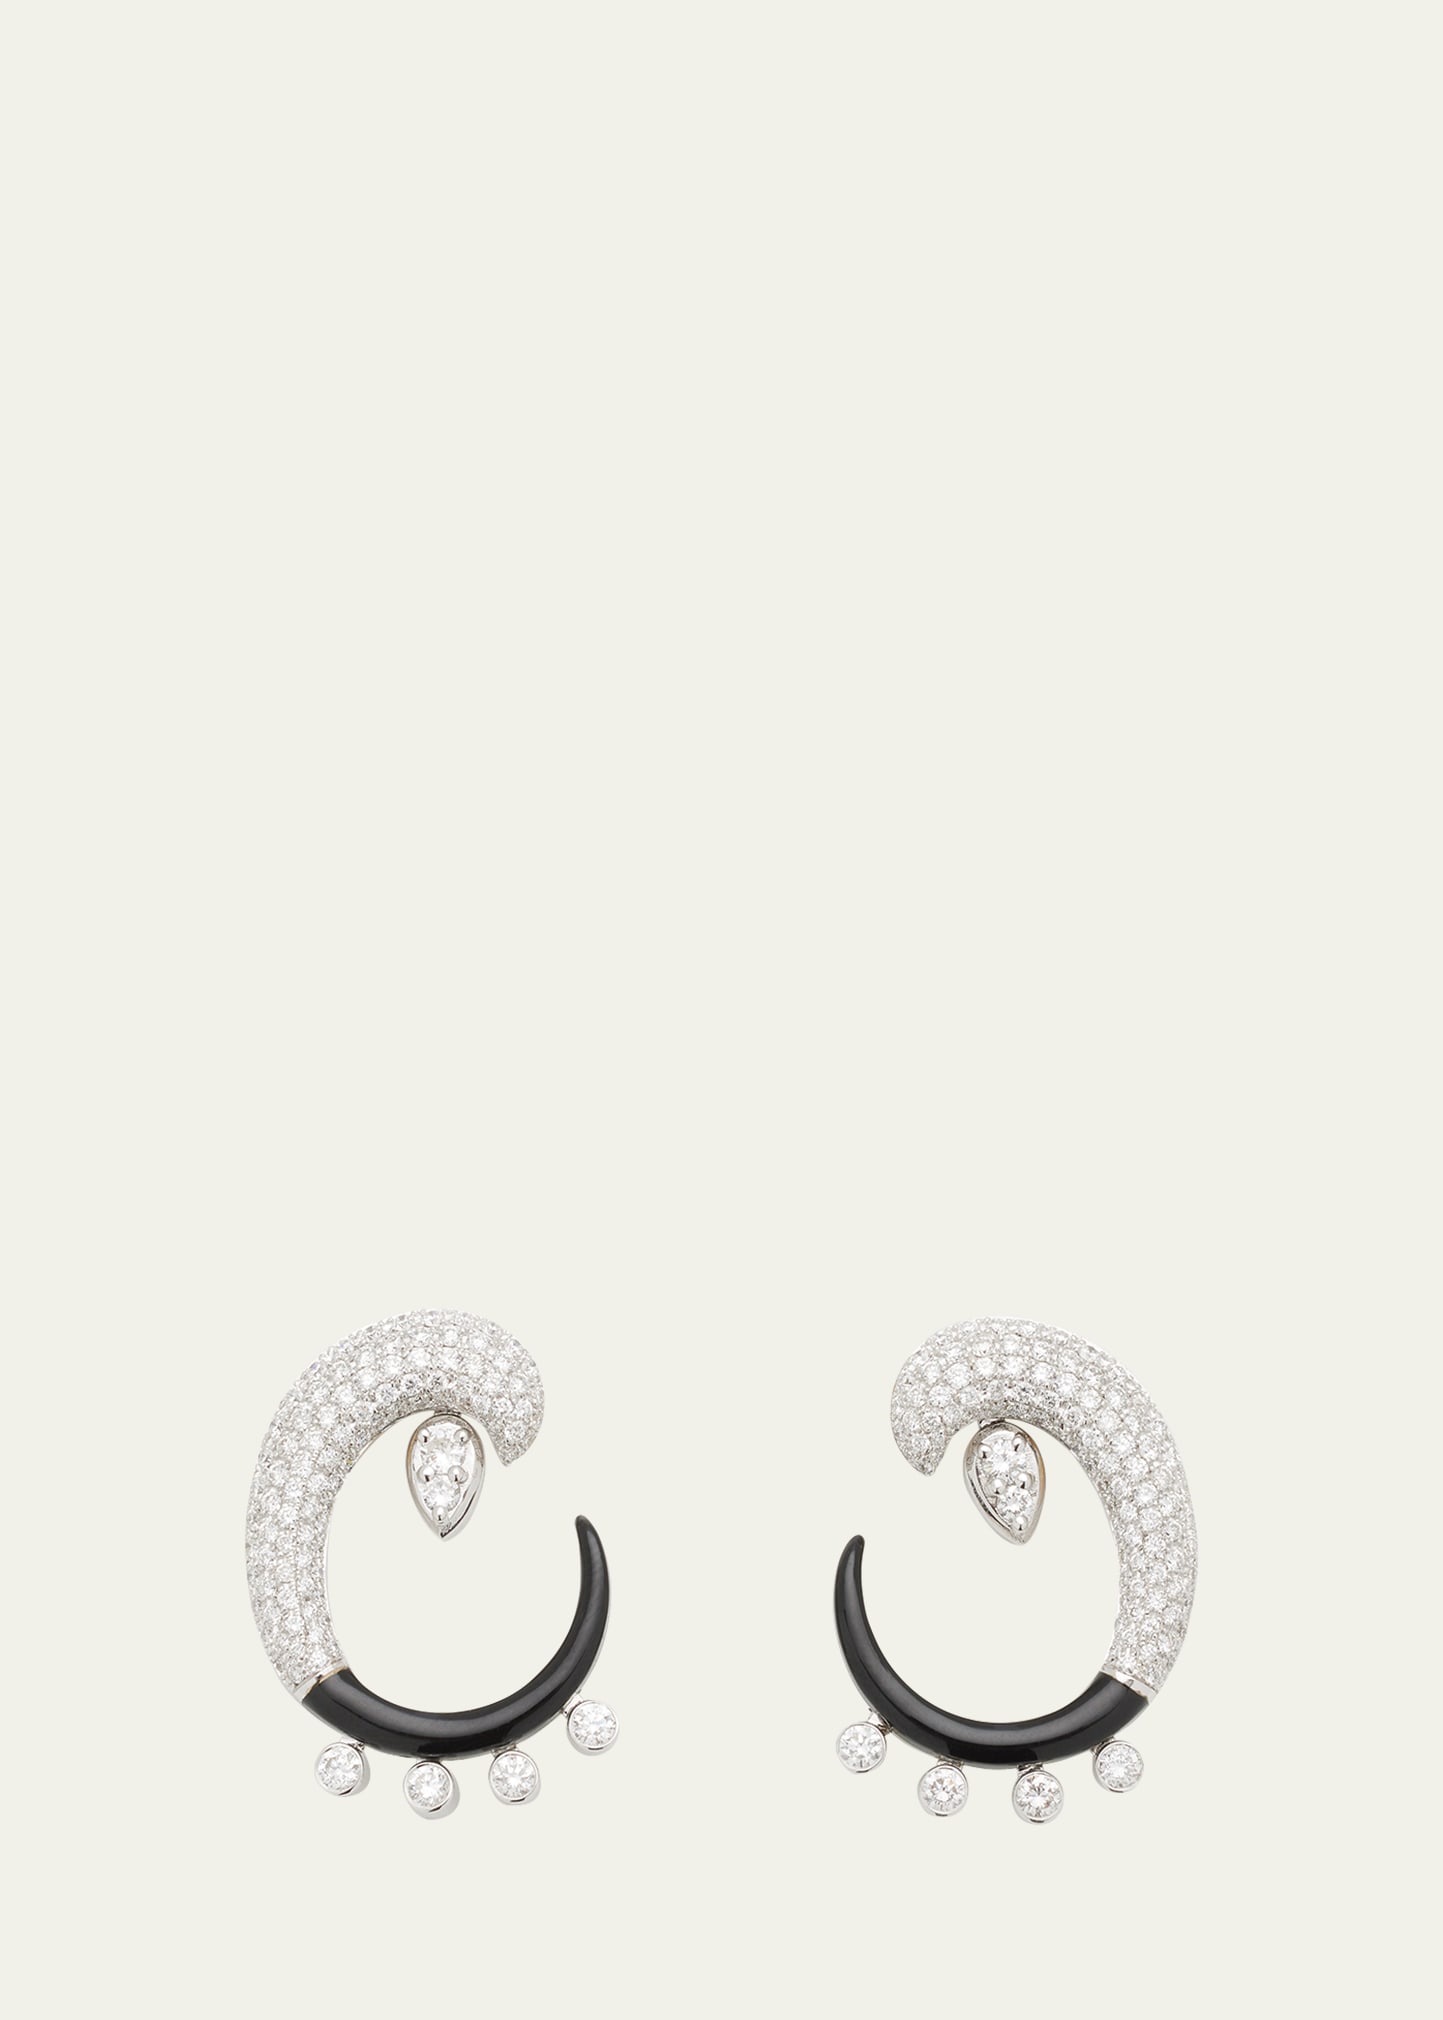 Oui Open Curl Earrings with Diamonds and Black Enamel